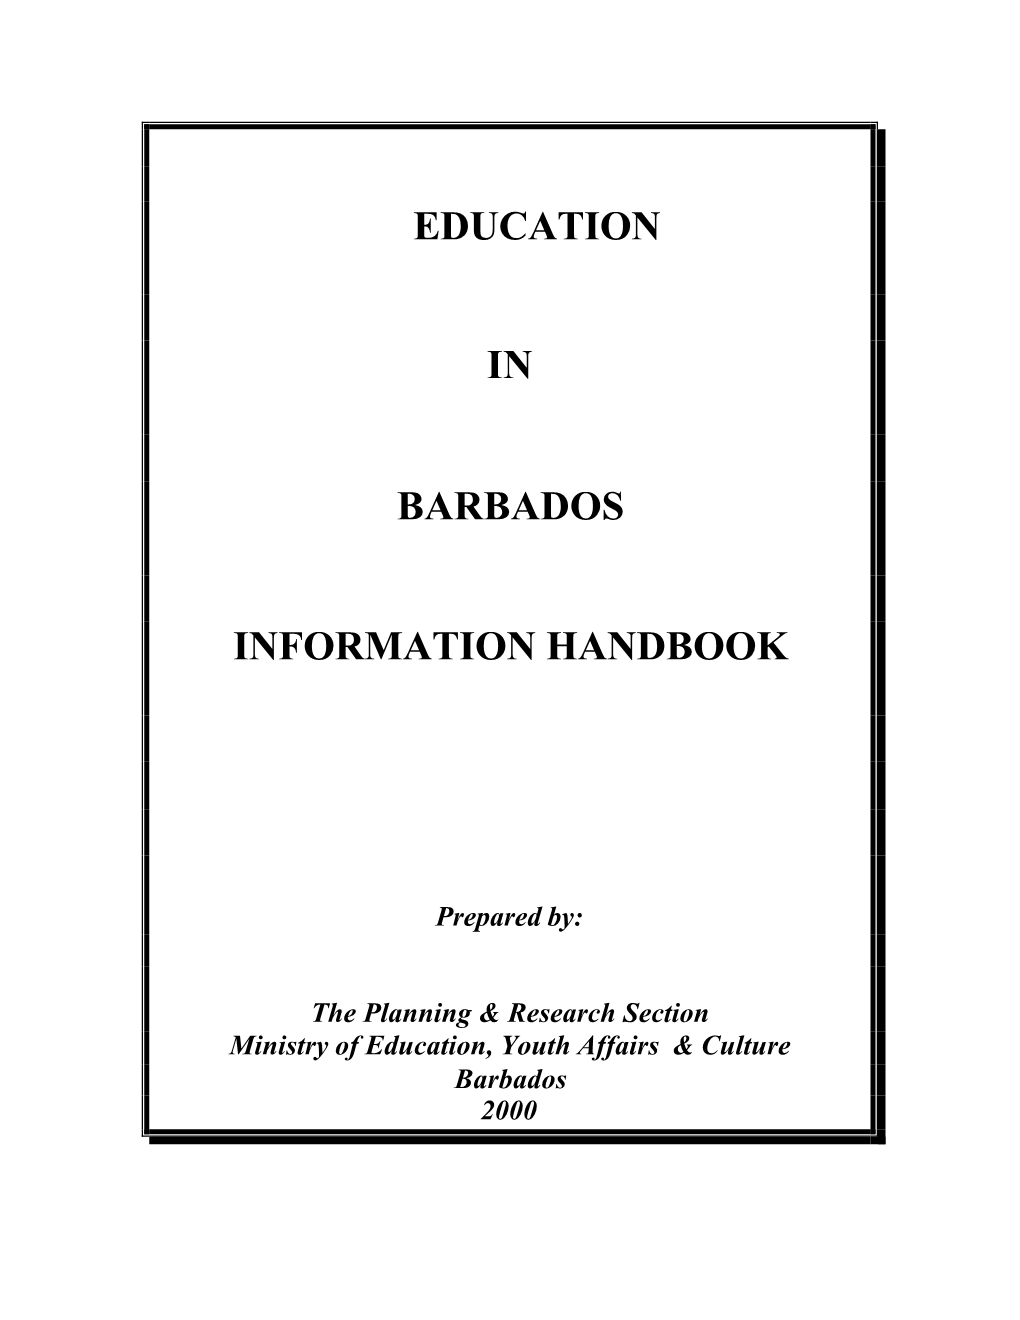 Education in Barbados Information Handbook